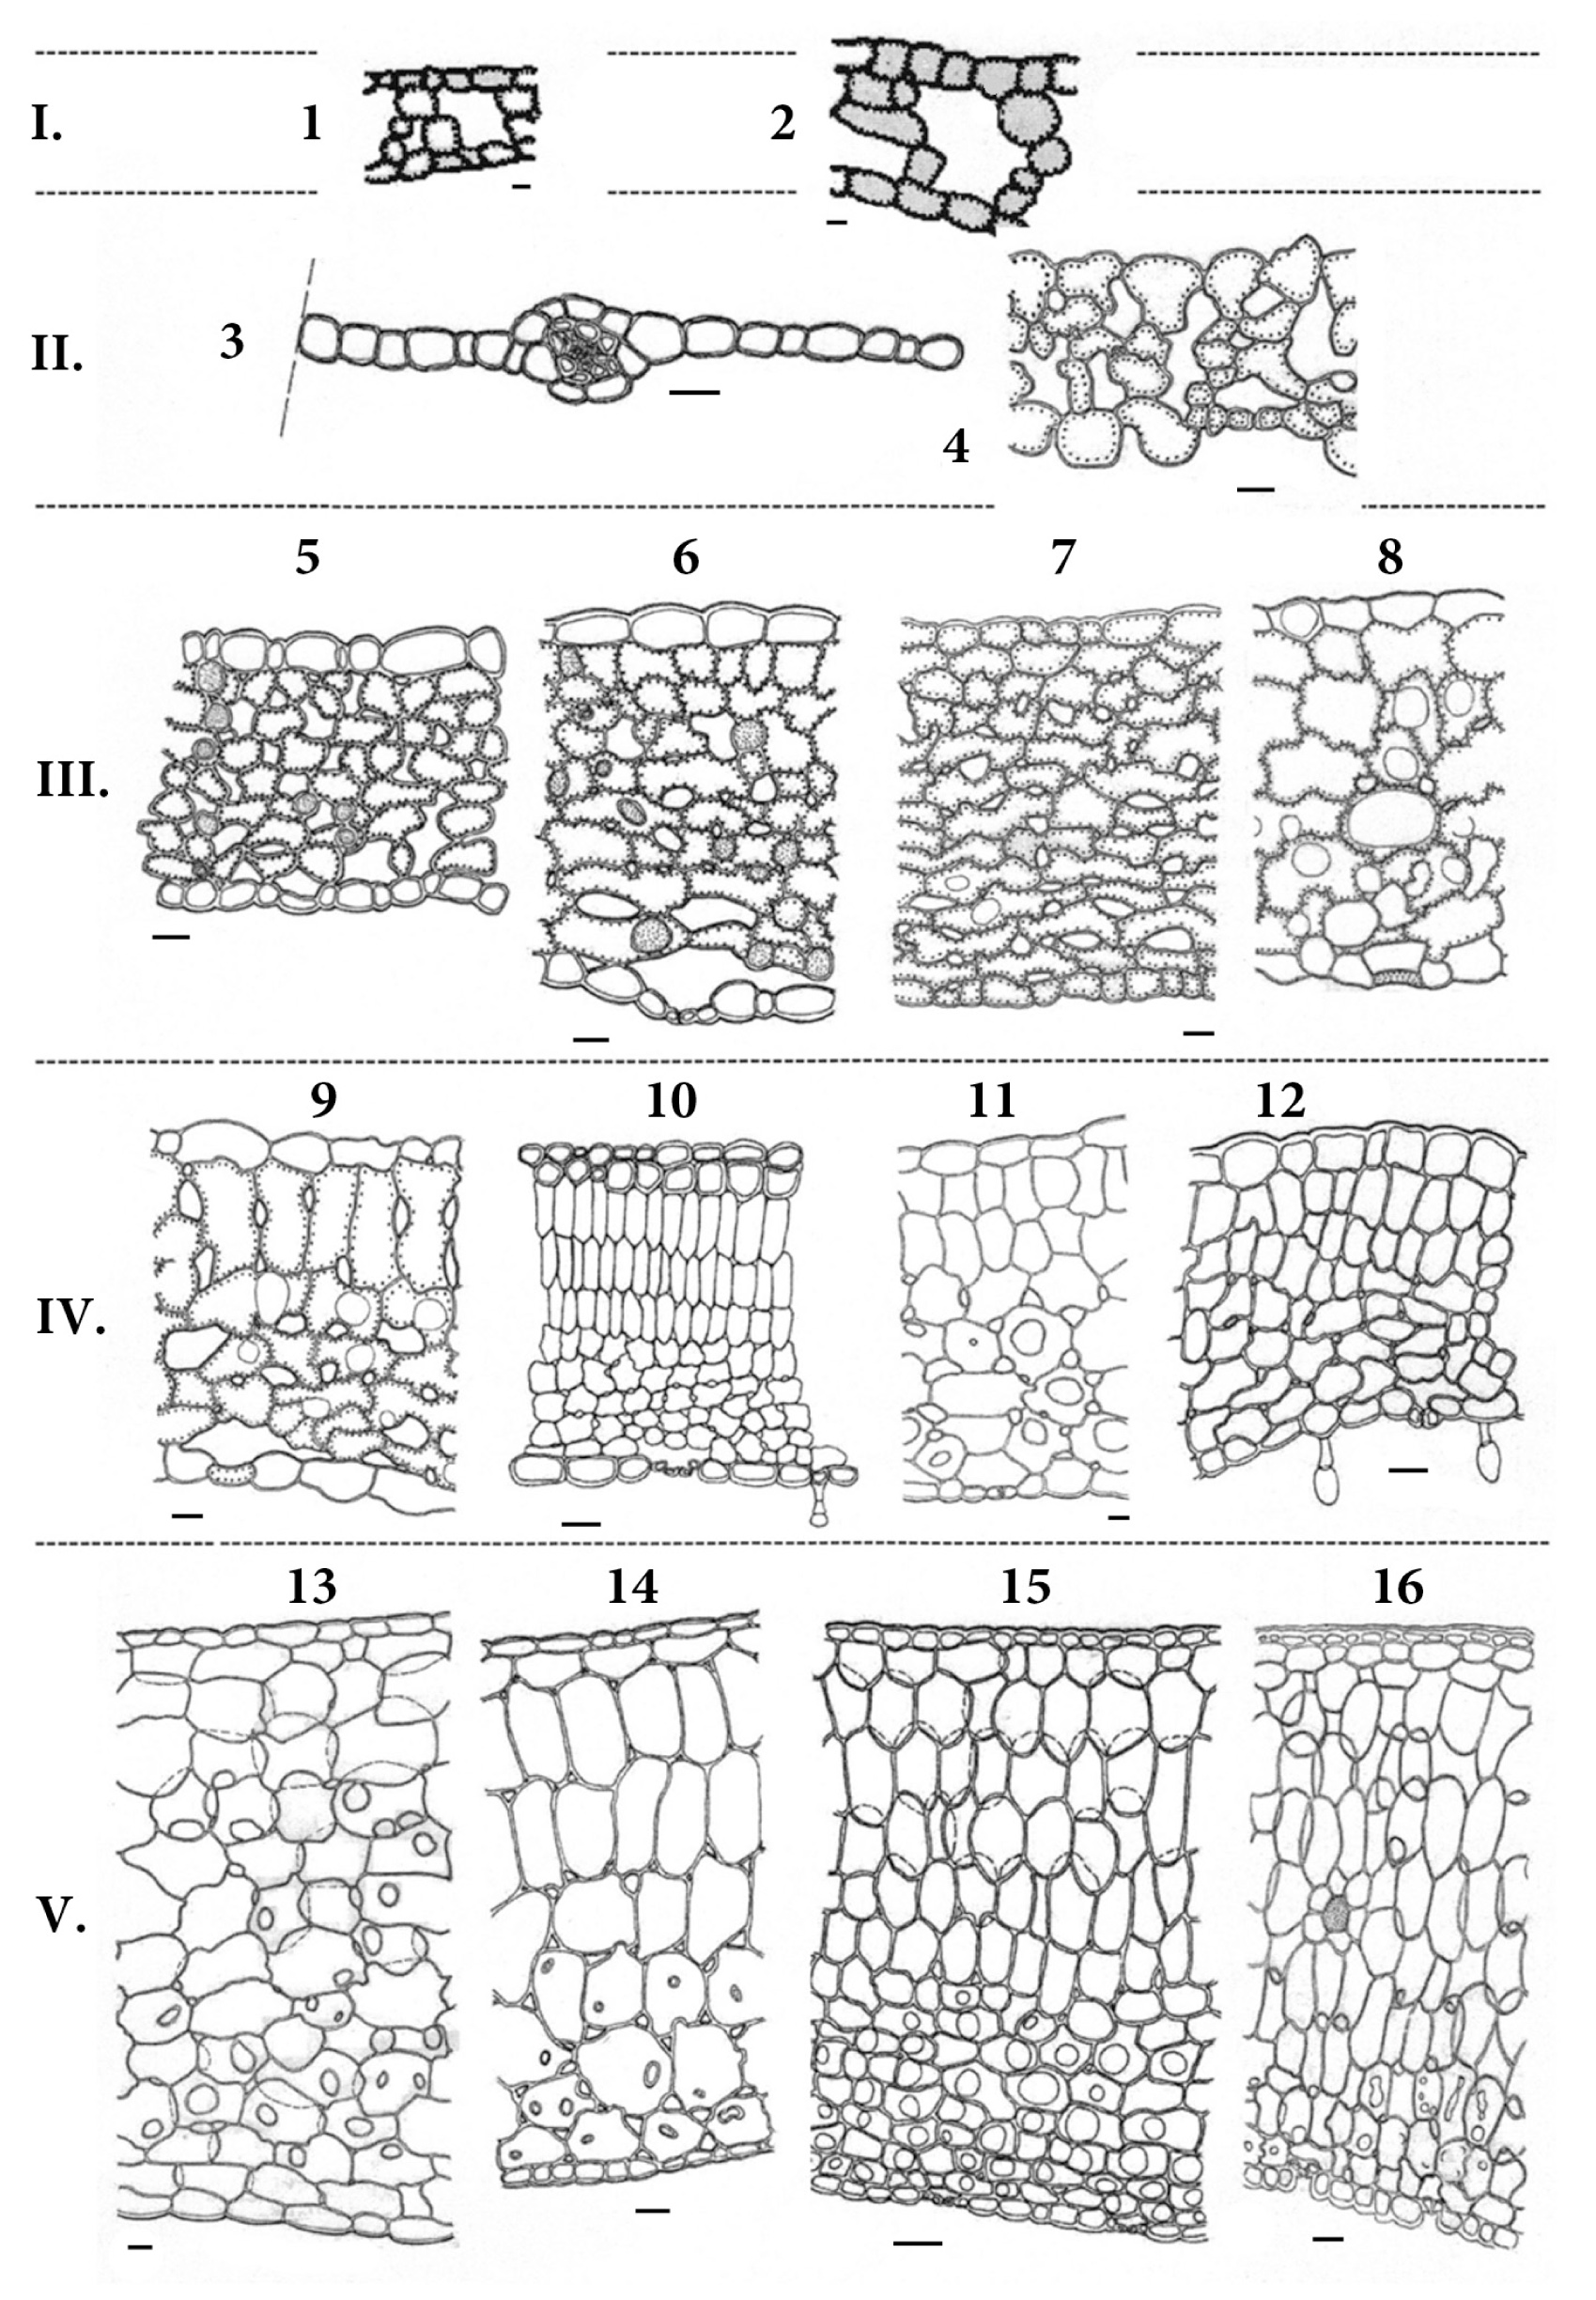 Fig. 1. Structural types of frond anatomy: I – hydromorphic; II – hygromorphic; III – mesomorphic; IV – subxeromorphic; V – subsucculent. 1 – Ceratopteris cornuta; 2 – Ceratopteris thalictroides; 3 – Crepidomanes latealatum; 4 – Adiantum capillus-veneris; 5 – Polypodium vulgare; 6 – Polypodium australe; 7 – Phyllitis scolopendrium; 8 – Microgramma piloselloides; 9 – Ceterach officinarum; 10 – Pyrrosia petiolosa; 11 – Lepisorus thunbergianus; 12 – Aleuritopteris argentea; 13 – Microsorium punctatum; 14 – Lemmaphyllum microphyllum; 15 – Platycerium willinckii; 16 – Pyrrosia longifolia. Scale: 0.01 mm.